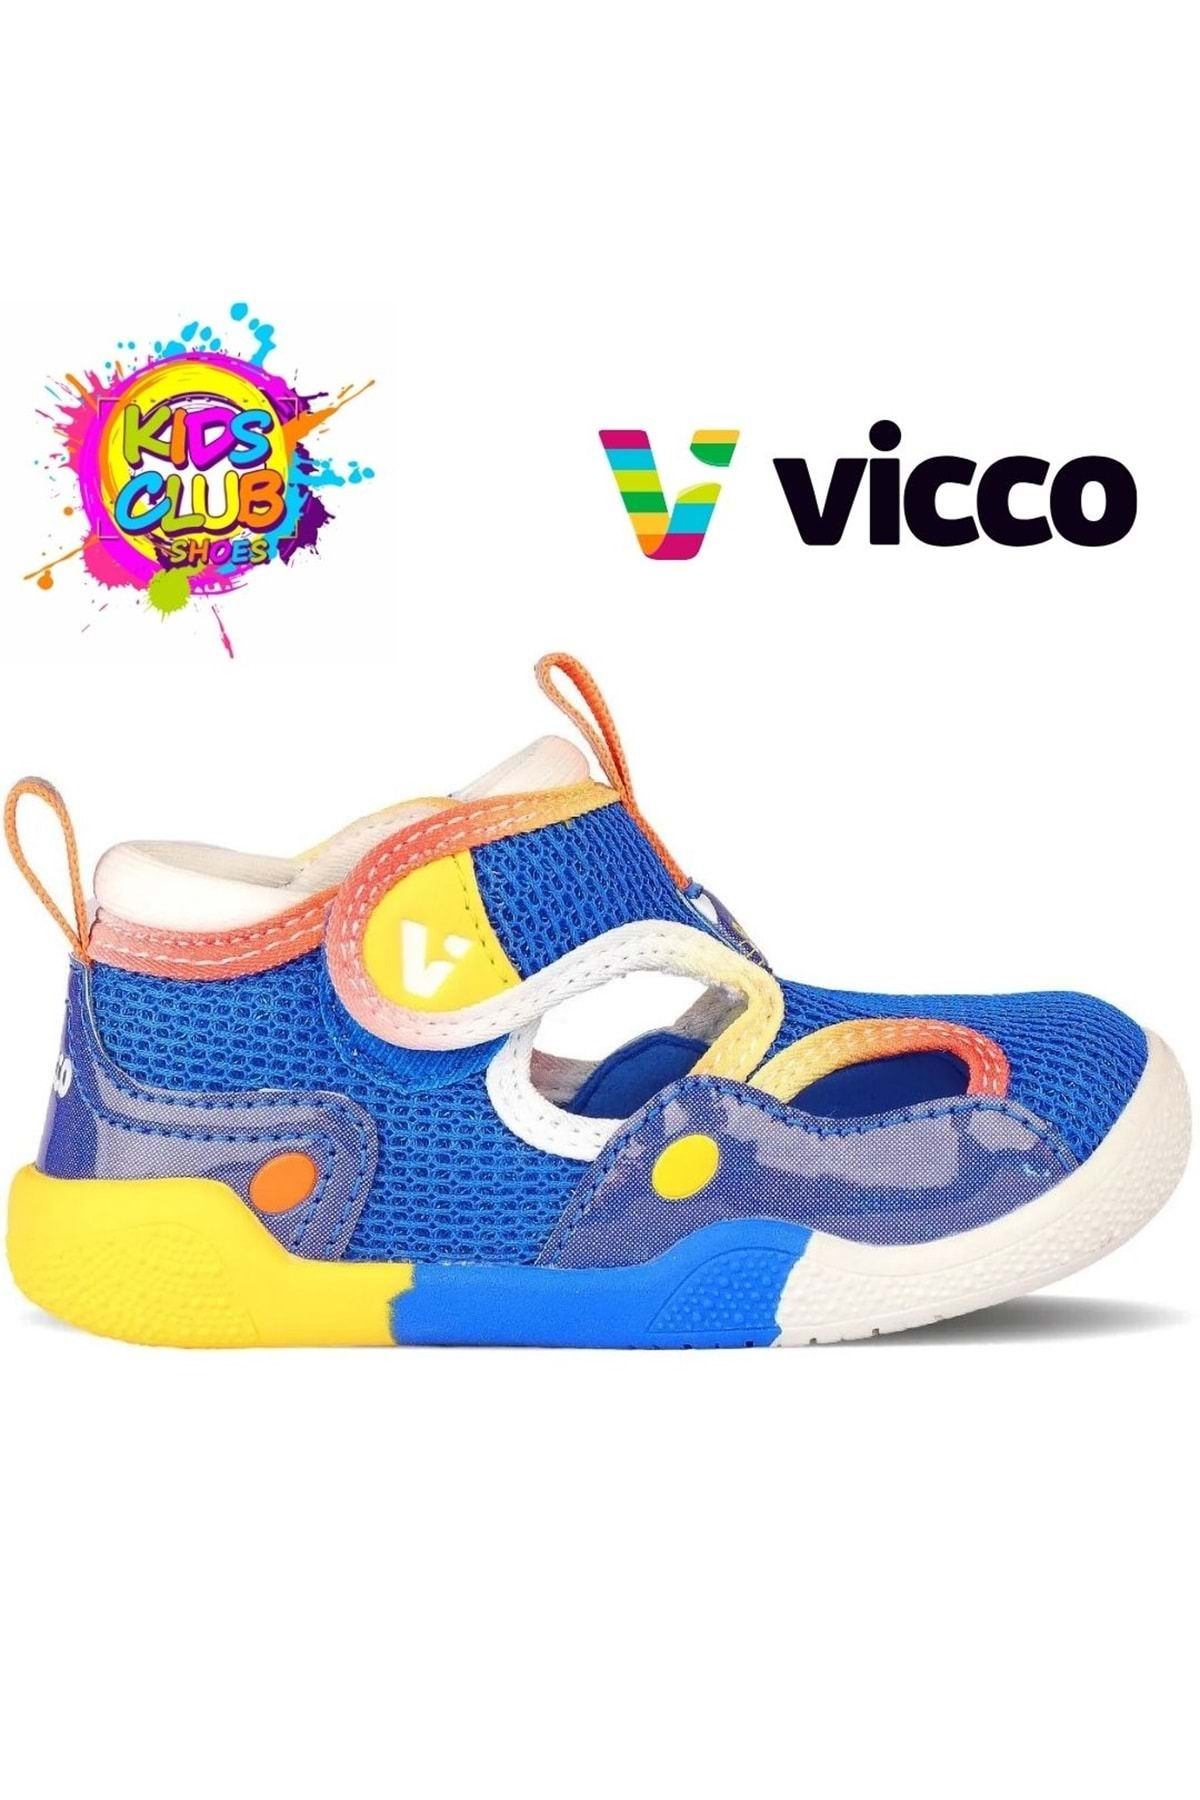 Kids Club Shoes Vicco Kendy İlk Adım Bebek Ortopedik Çocuk Spor Ayakkabı MAVİ